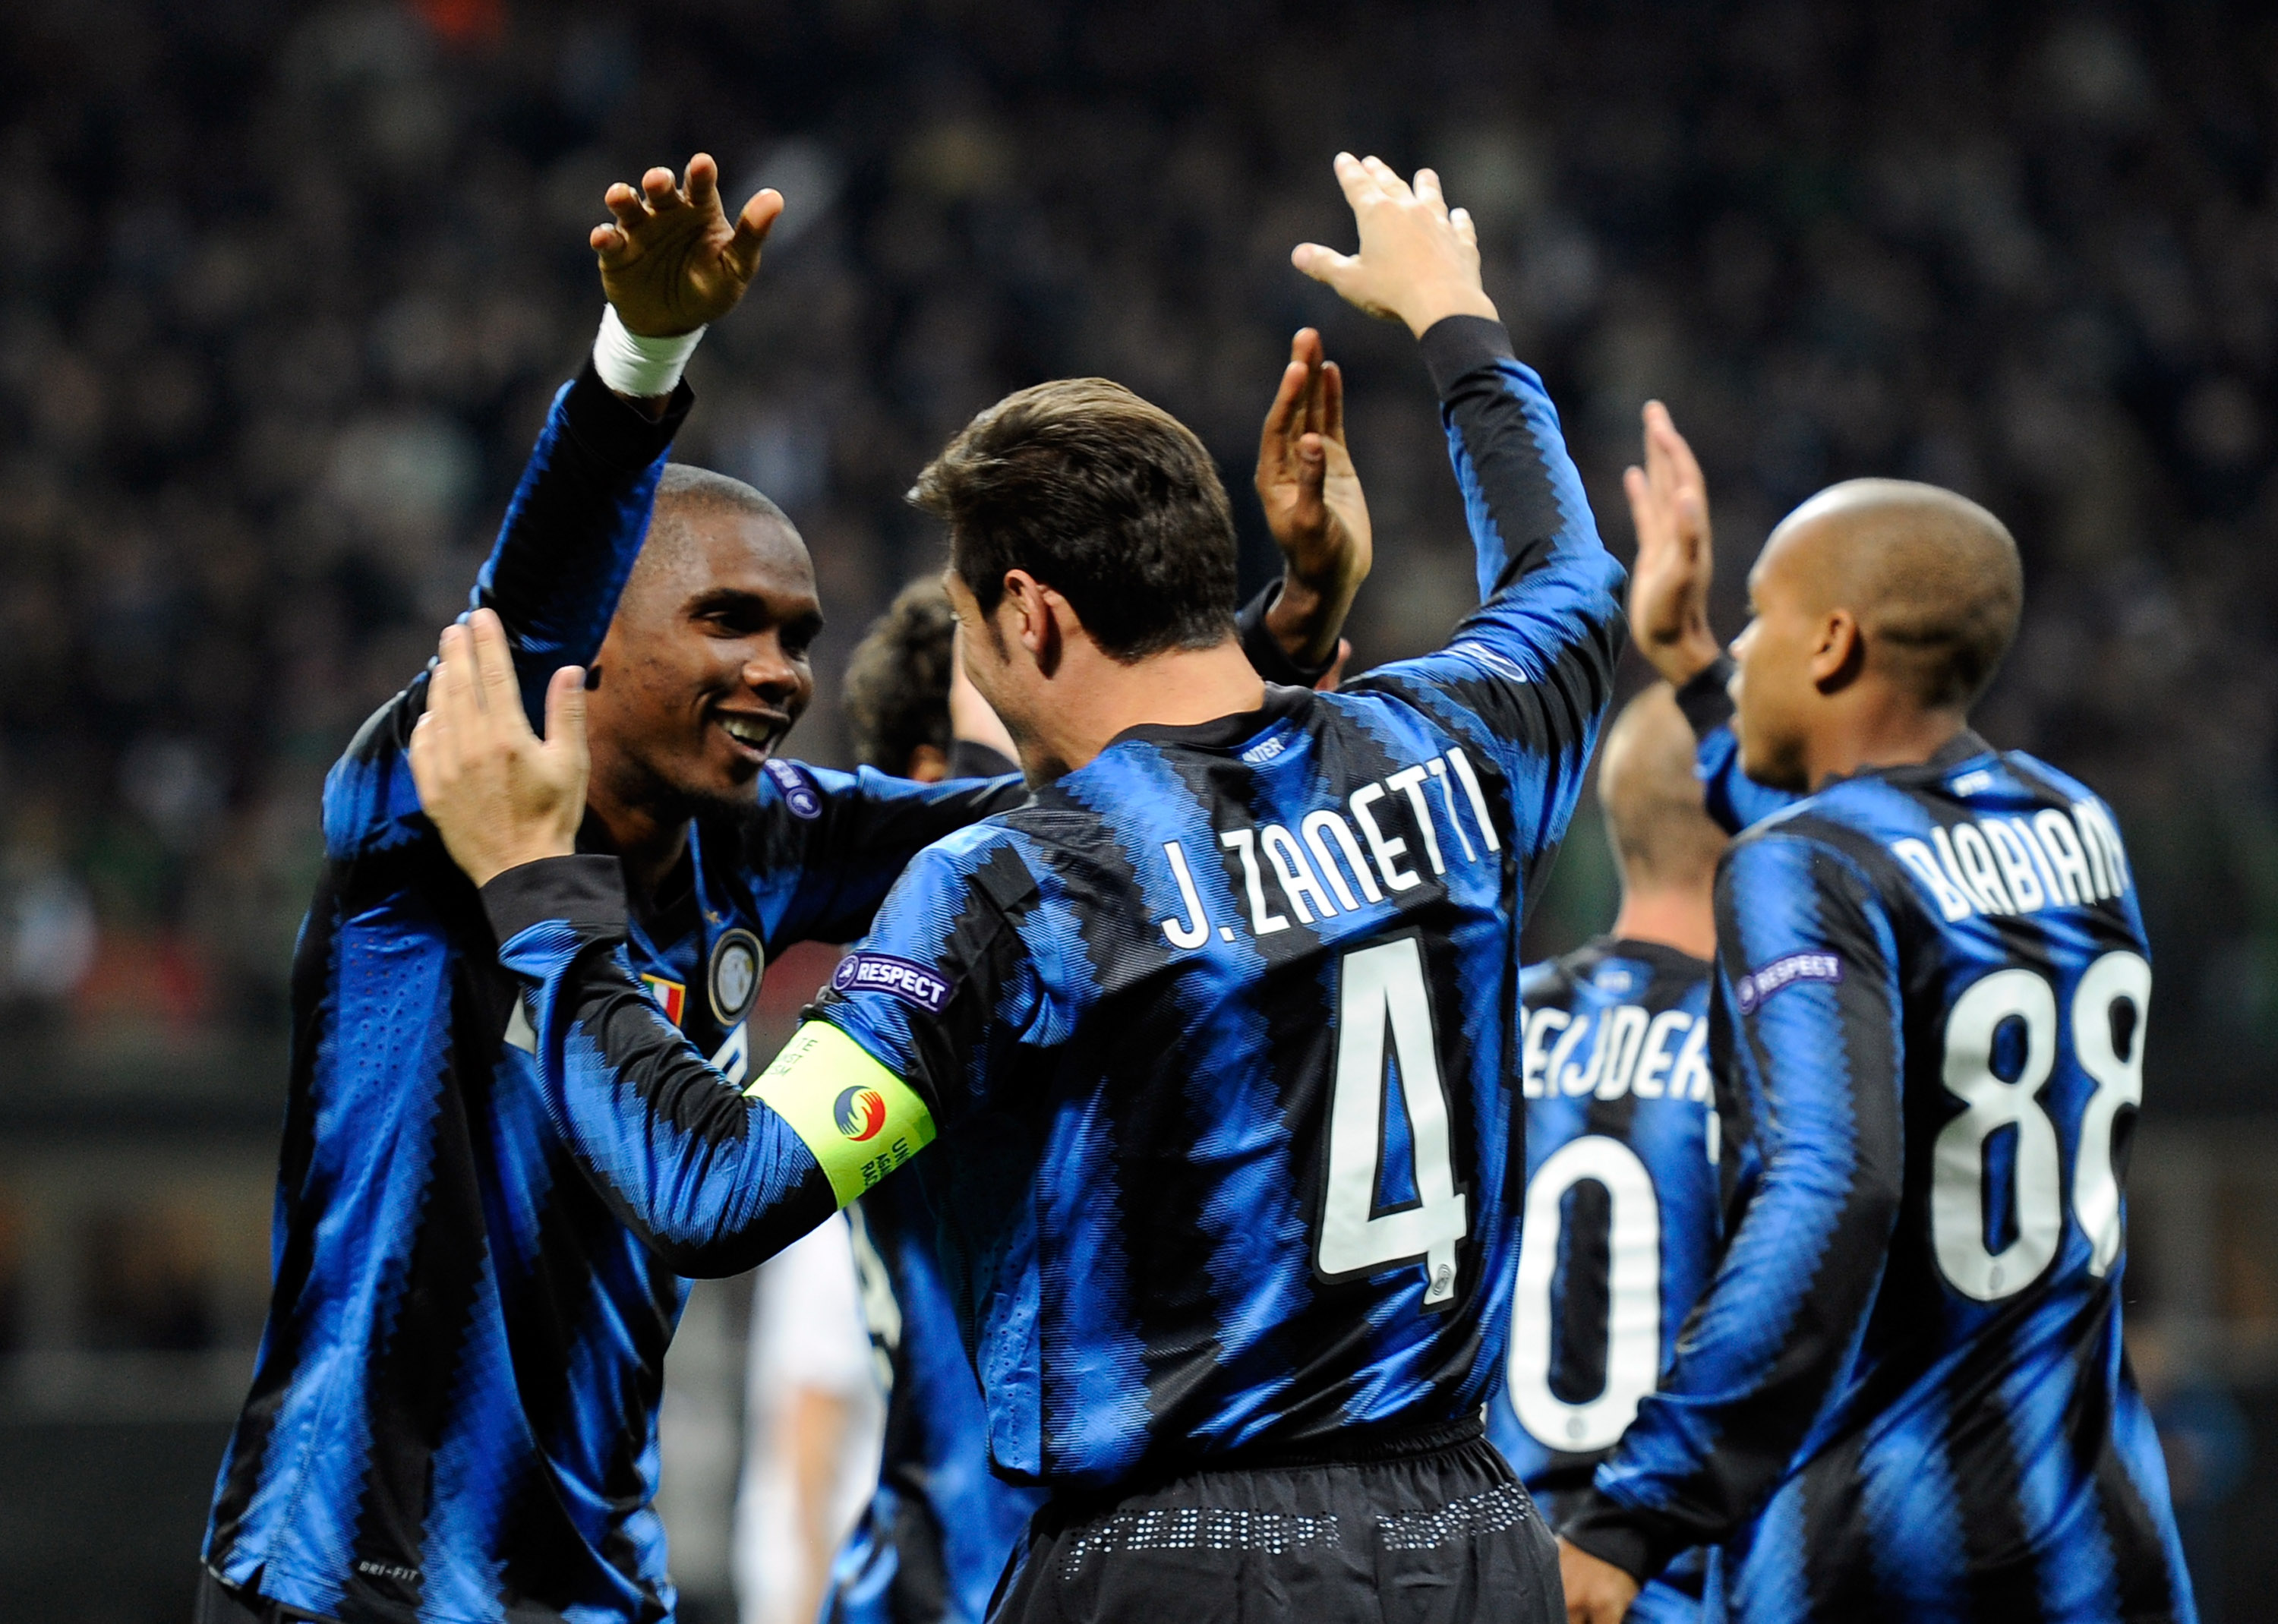 It took time for Samuel Eto'o to score as Inter drew 1-1 with Sampdoria.